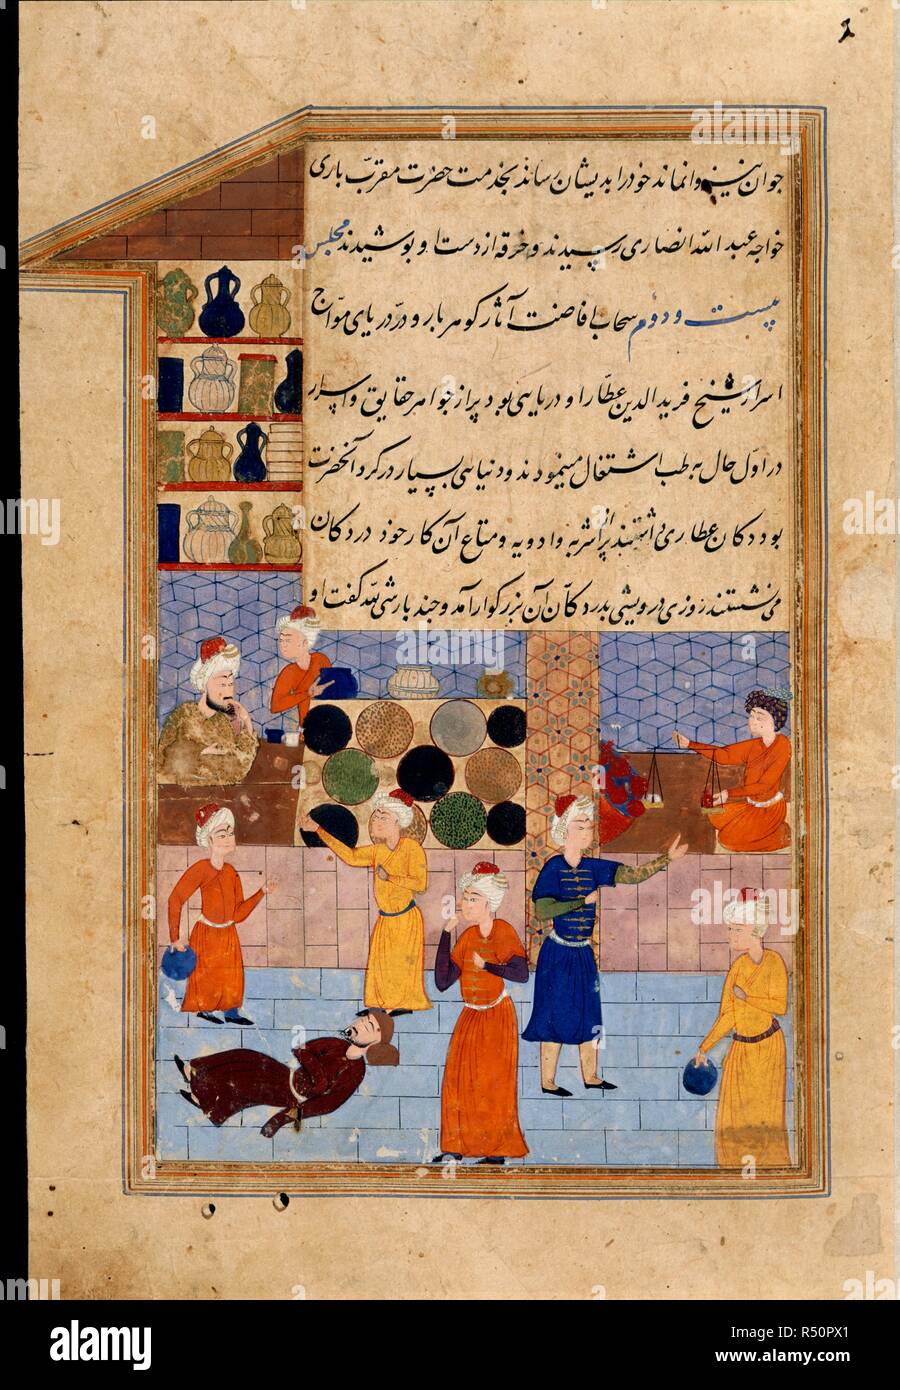 Derviche moribundo en un bazar. Majalis al-'ushshaq. En Shiraz, Irán, c.1560. Farid al-Din 'Attar (d.1230) mirando el derviche fallecidos en el bazar. Una miniatura de la pintura desde el siglo XVI un manuscrito de Majalis al-'ushshaq ('Las Asambleas de los Amantes"). Imagen tomada de Majalis al-'ushshaq. Originalmente publicado/producida en Shiraz, Irán, c.1560. . Fuente: o. 11837, f.89. Idioma: persa. Foto de stock